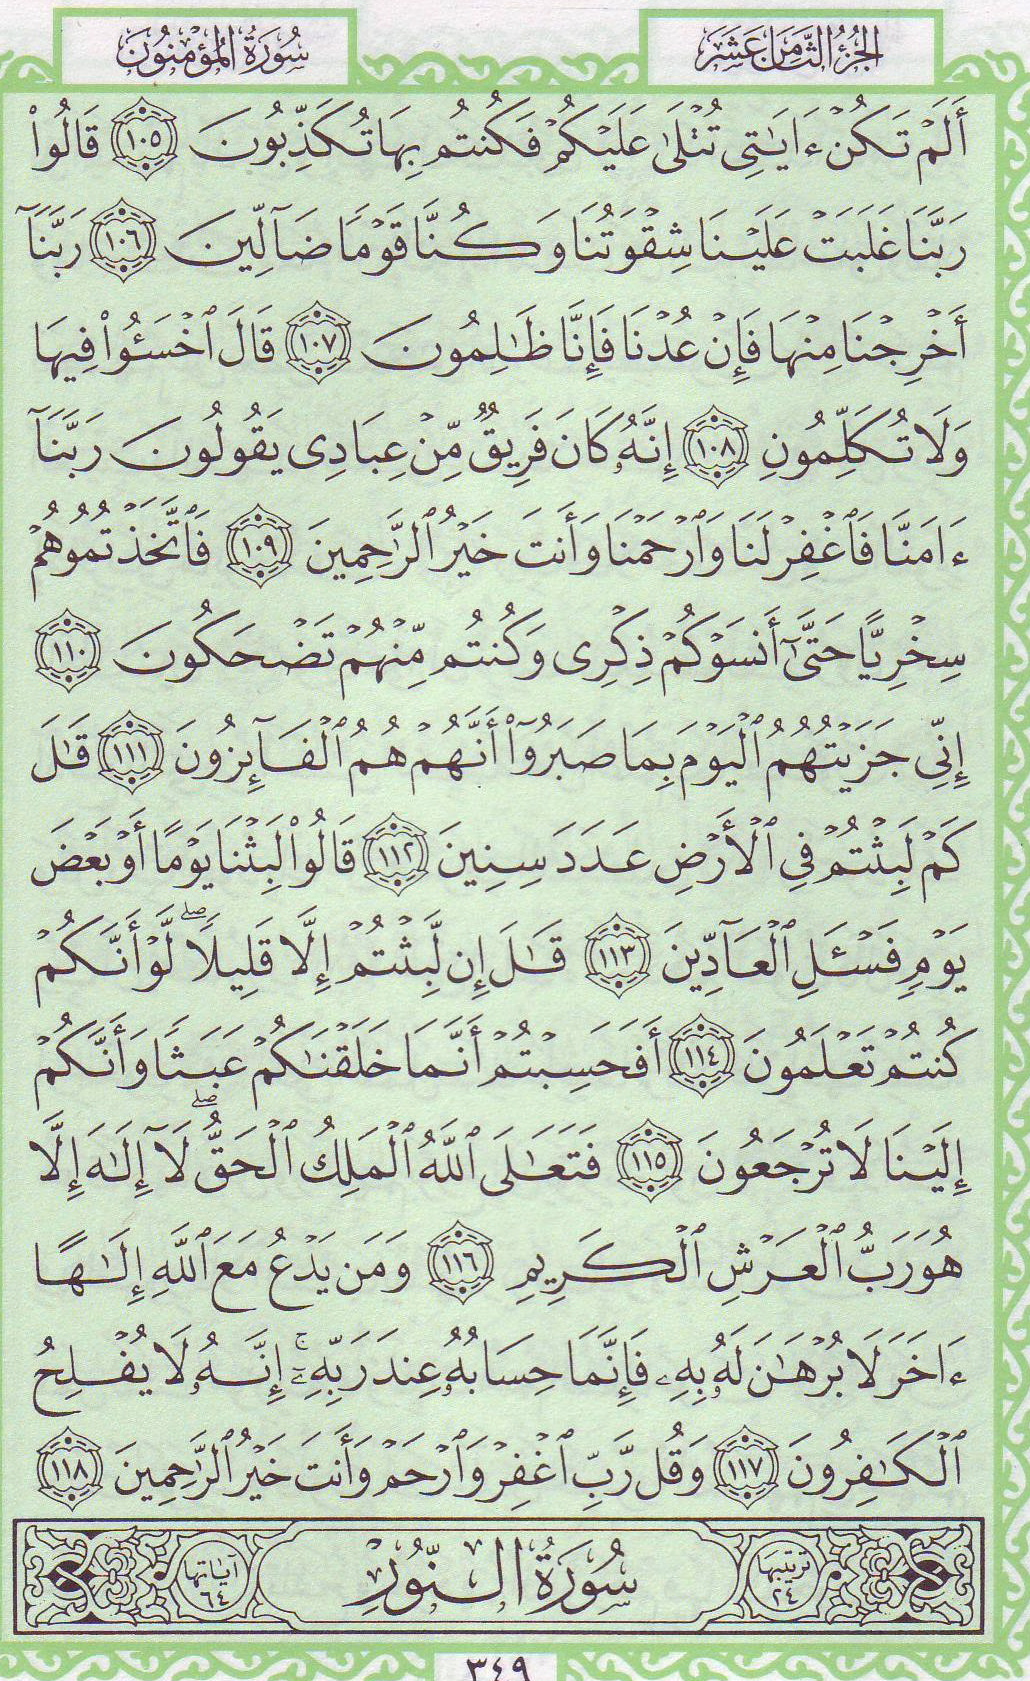 Qur'an_23_112.jpg